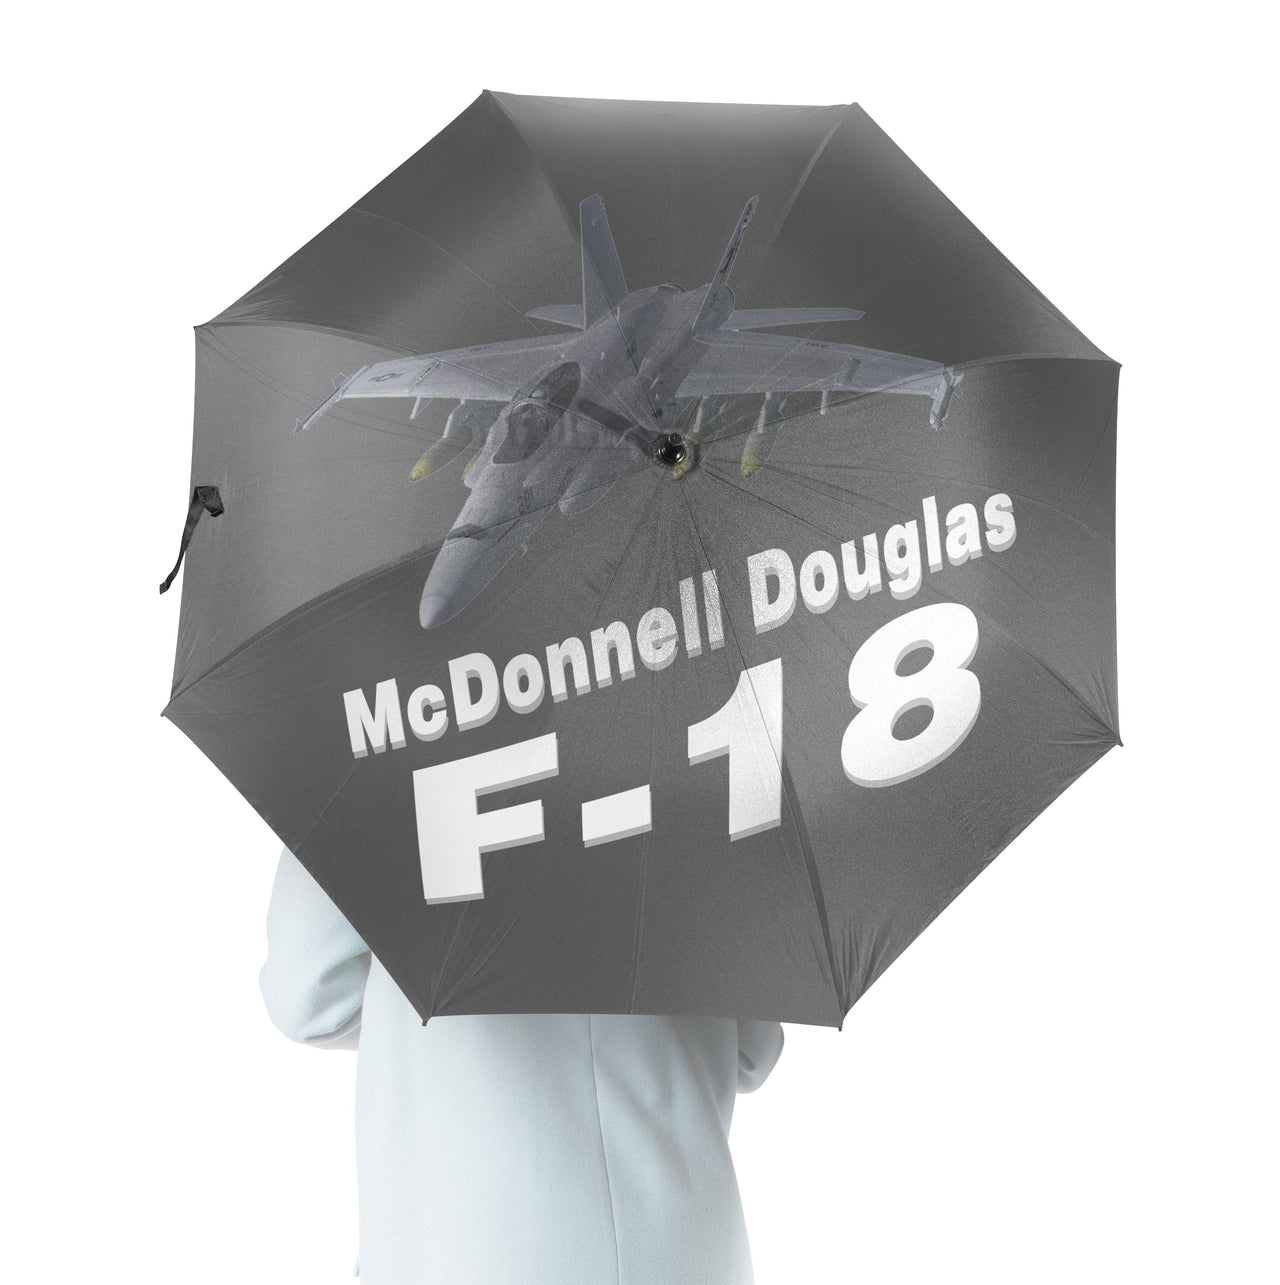 The McDonnell Douglas F18 Designed Umbrella